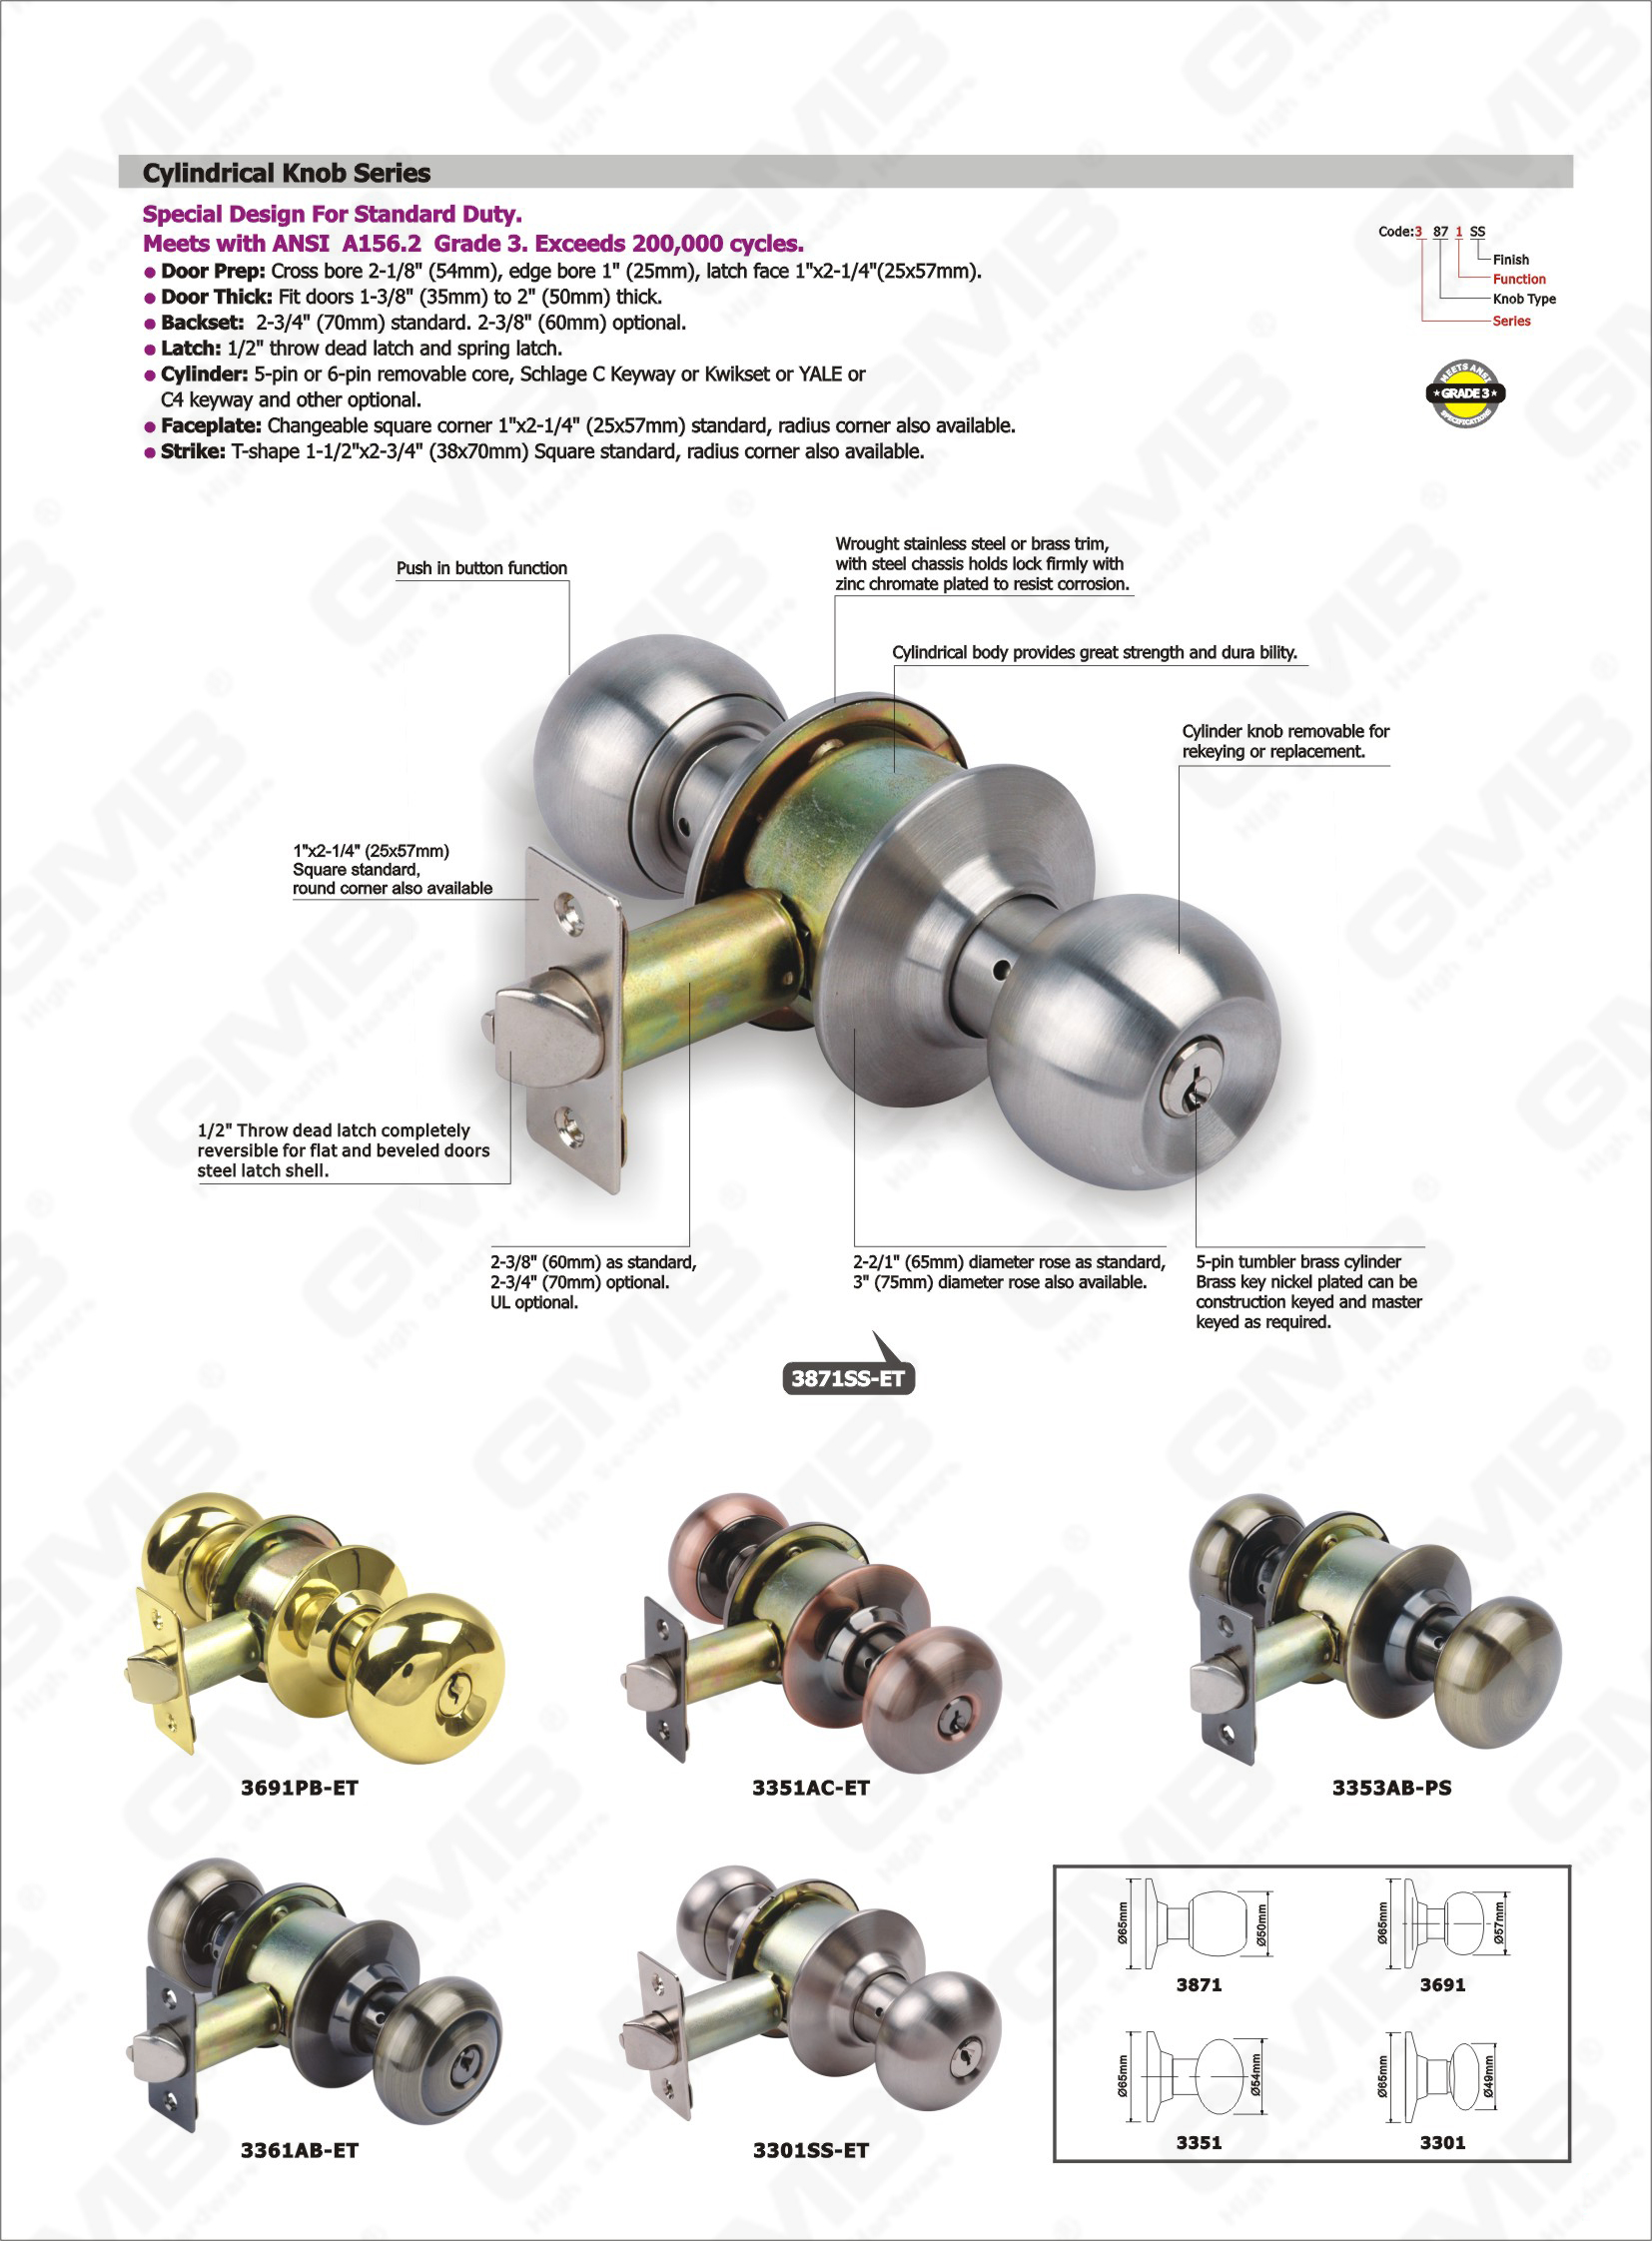 Manopola cilindro rimovibile per il design speciale di rekeying o sostituzione ANSI Serie di blocchi cilindrici a manopola cilindrica (3301SS-ET)